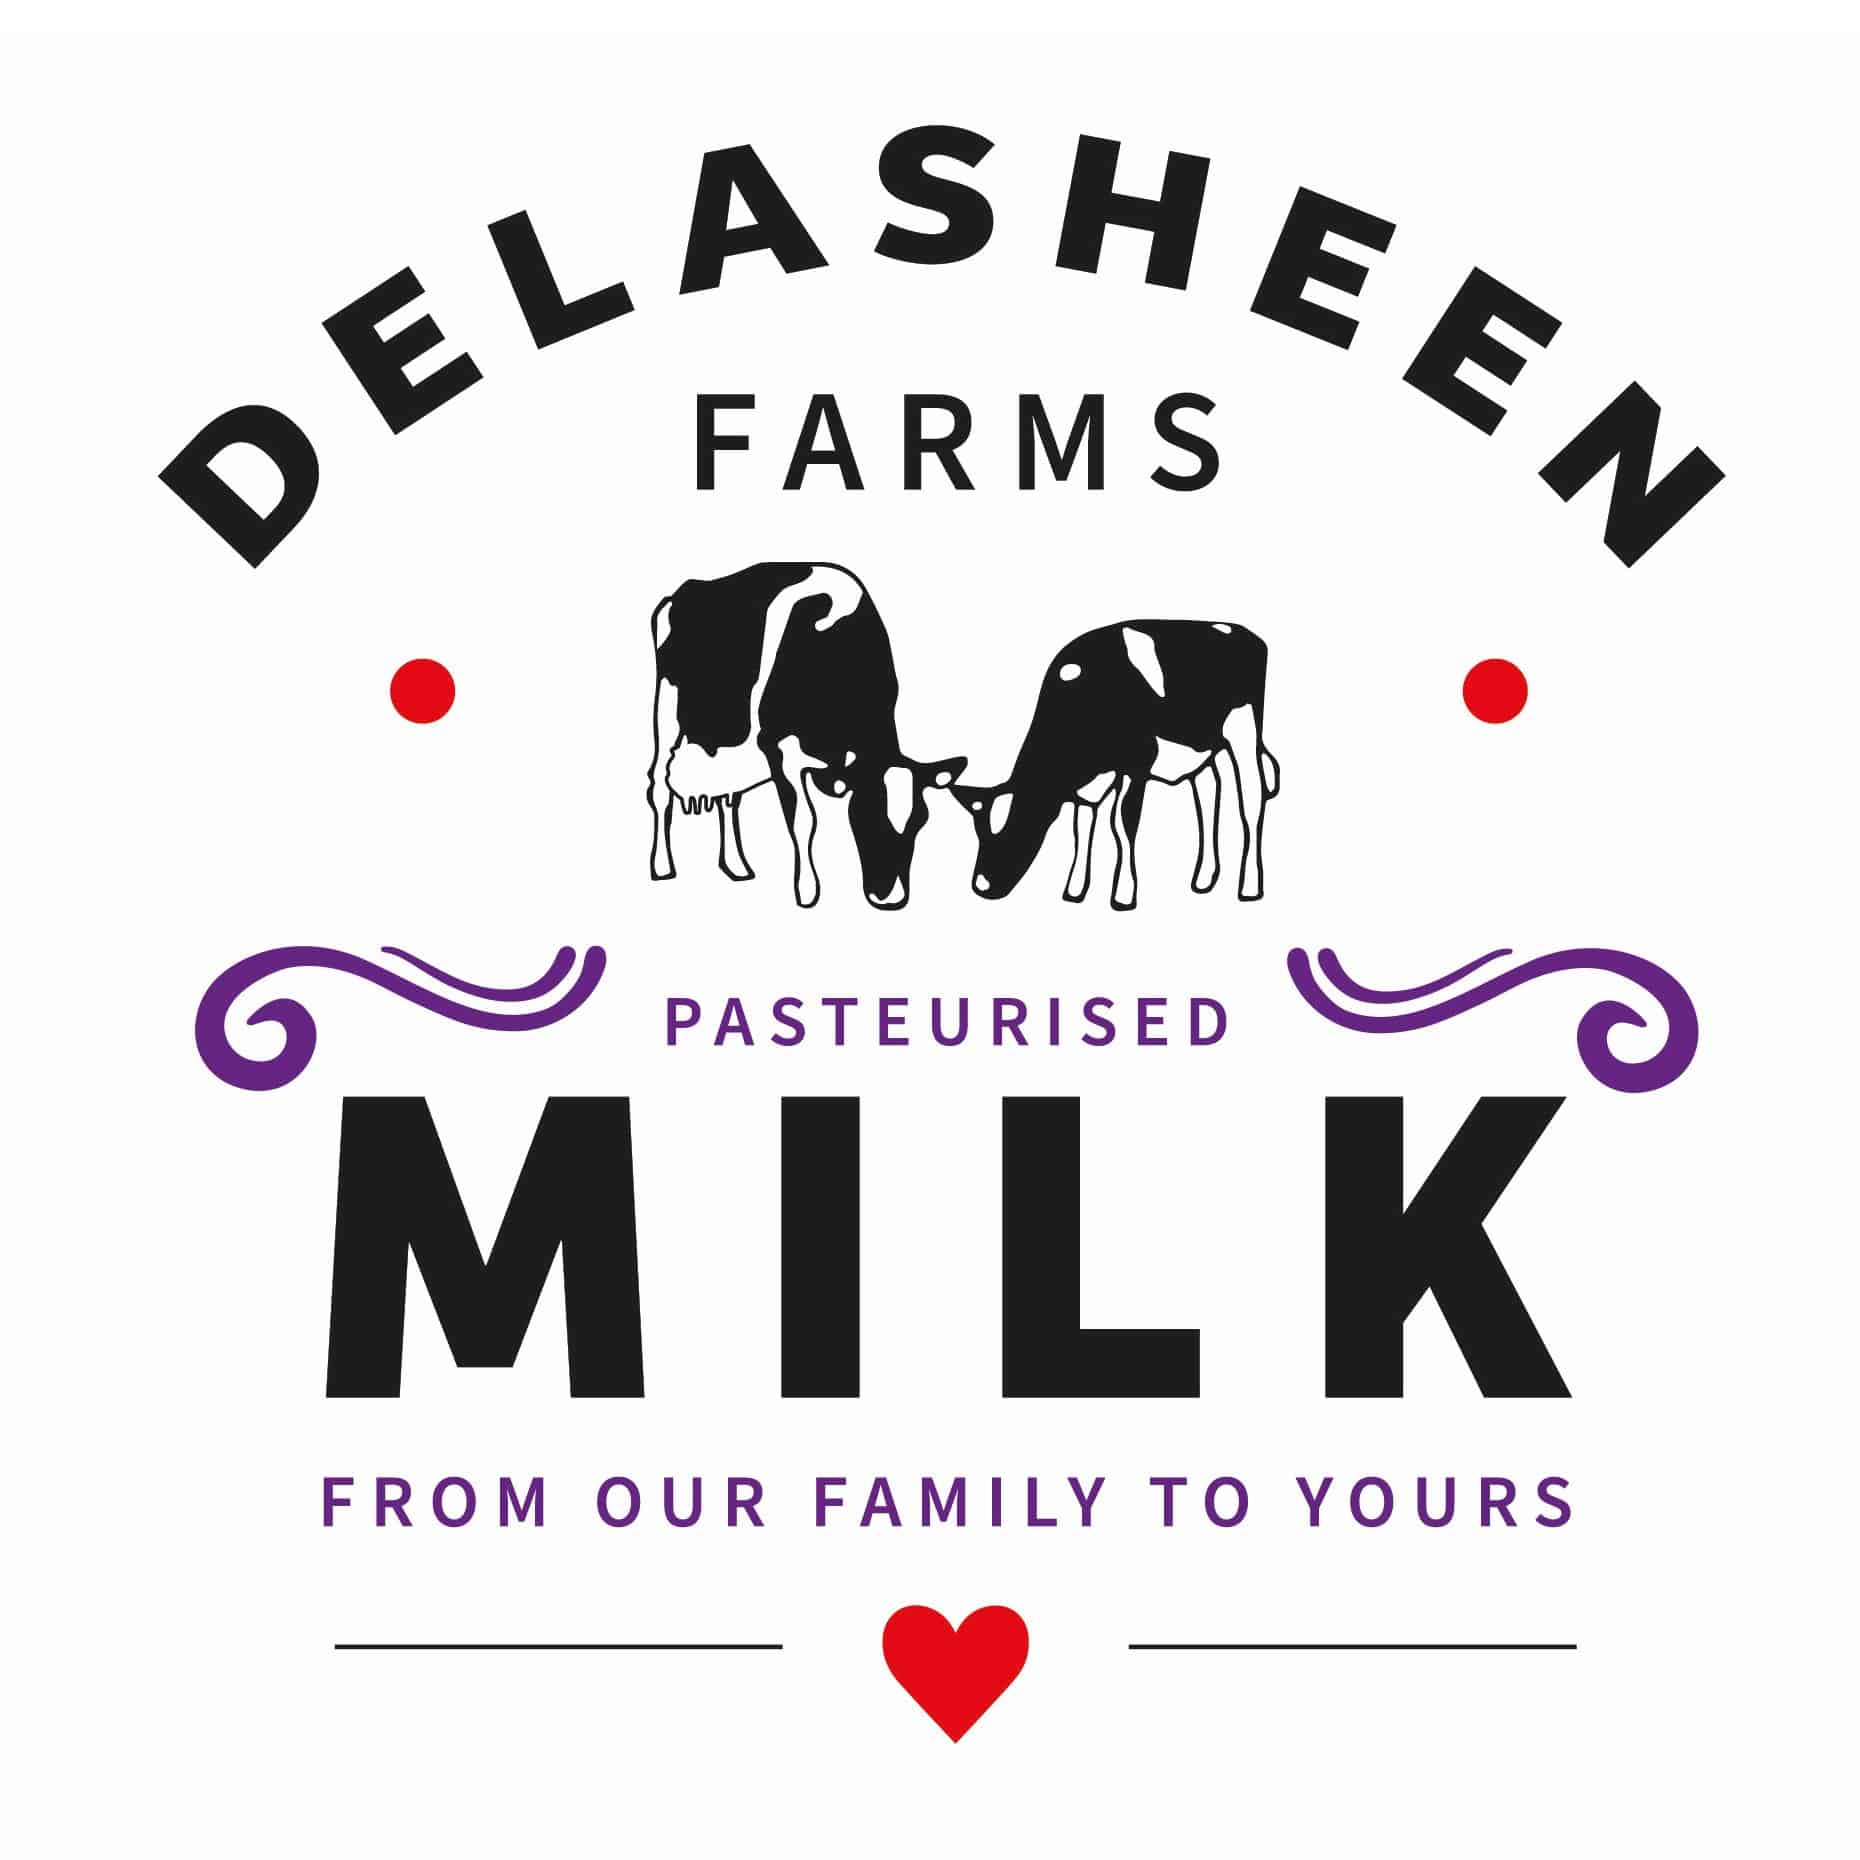 Dalasheens Farm